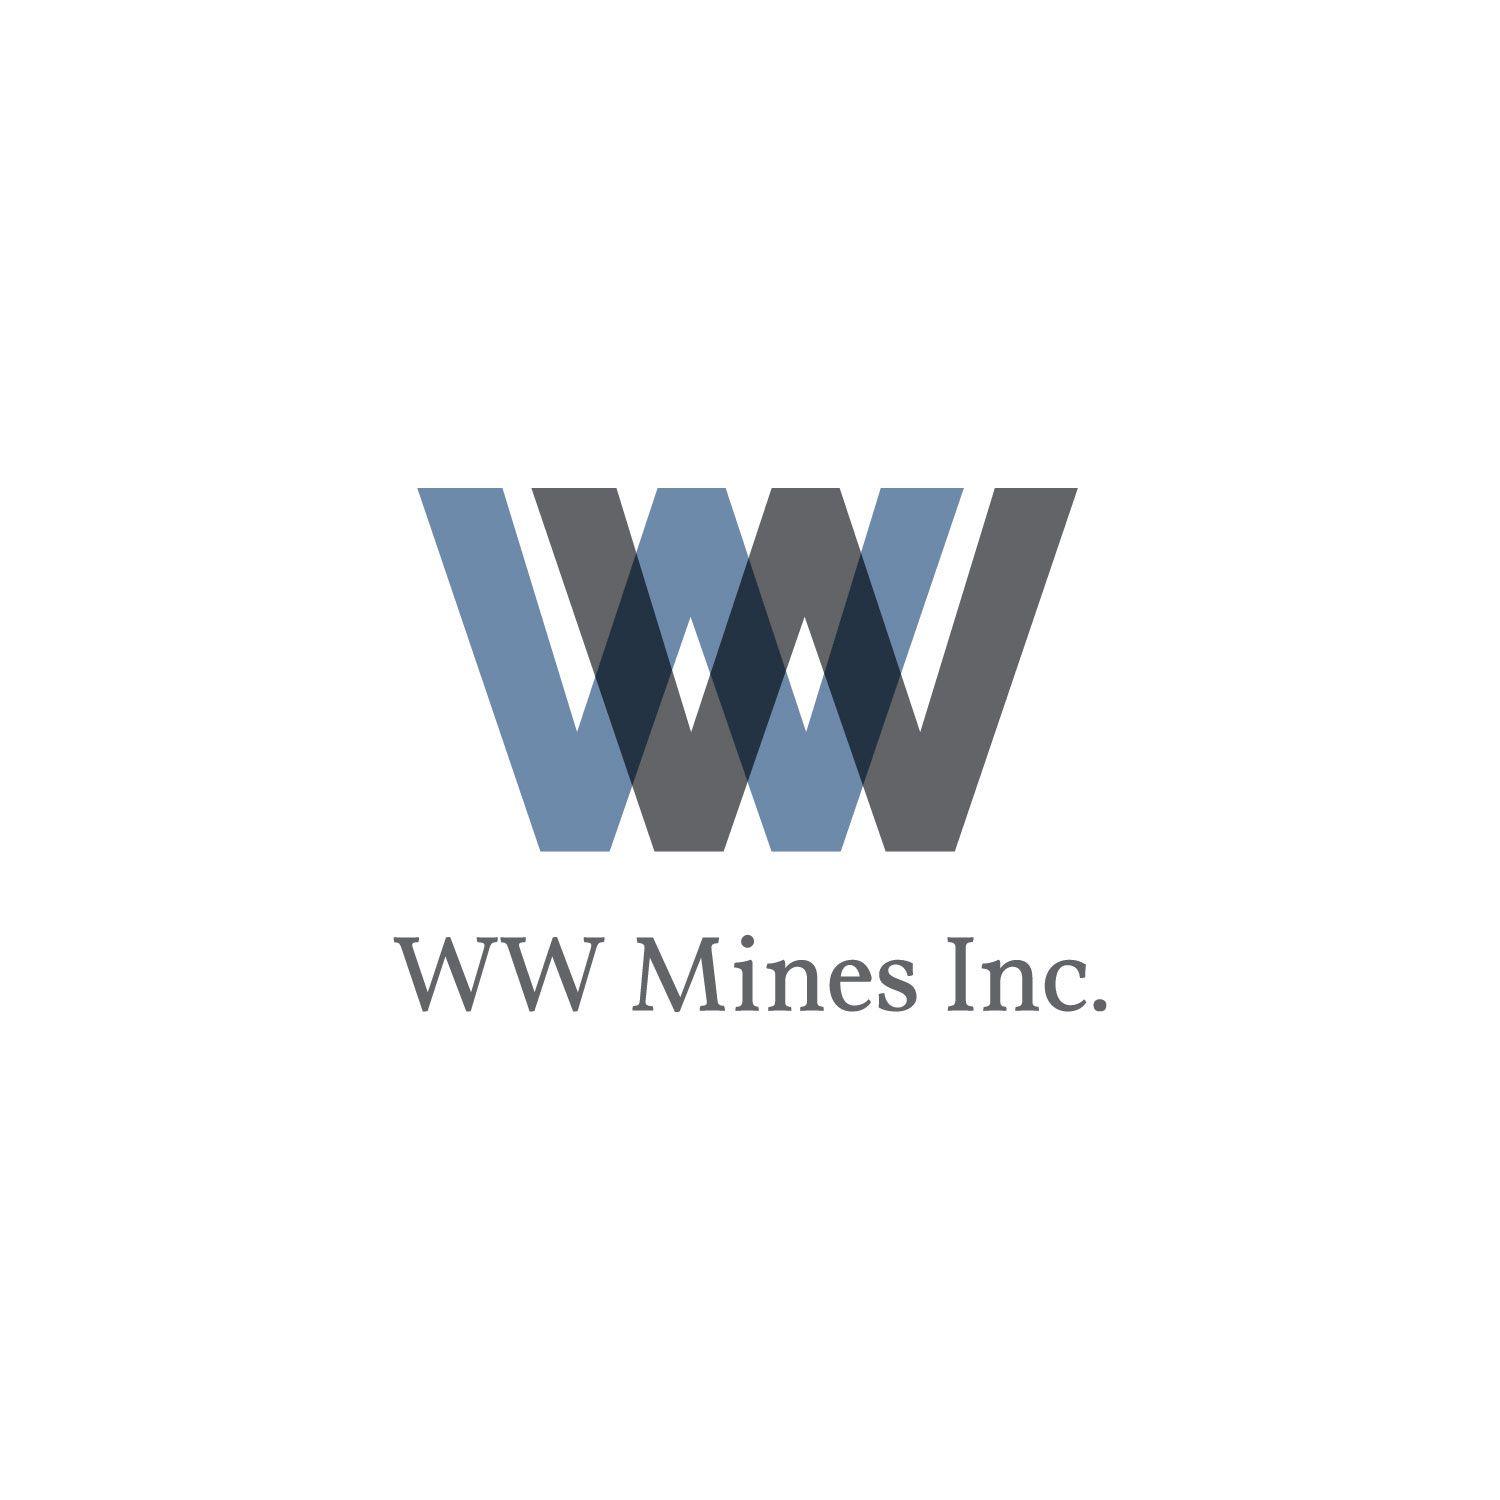 WW Logo - WW Mines Inc. – BFdesign